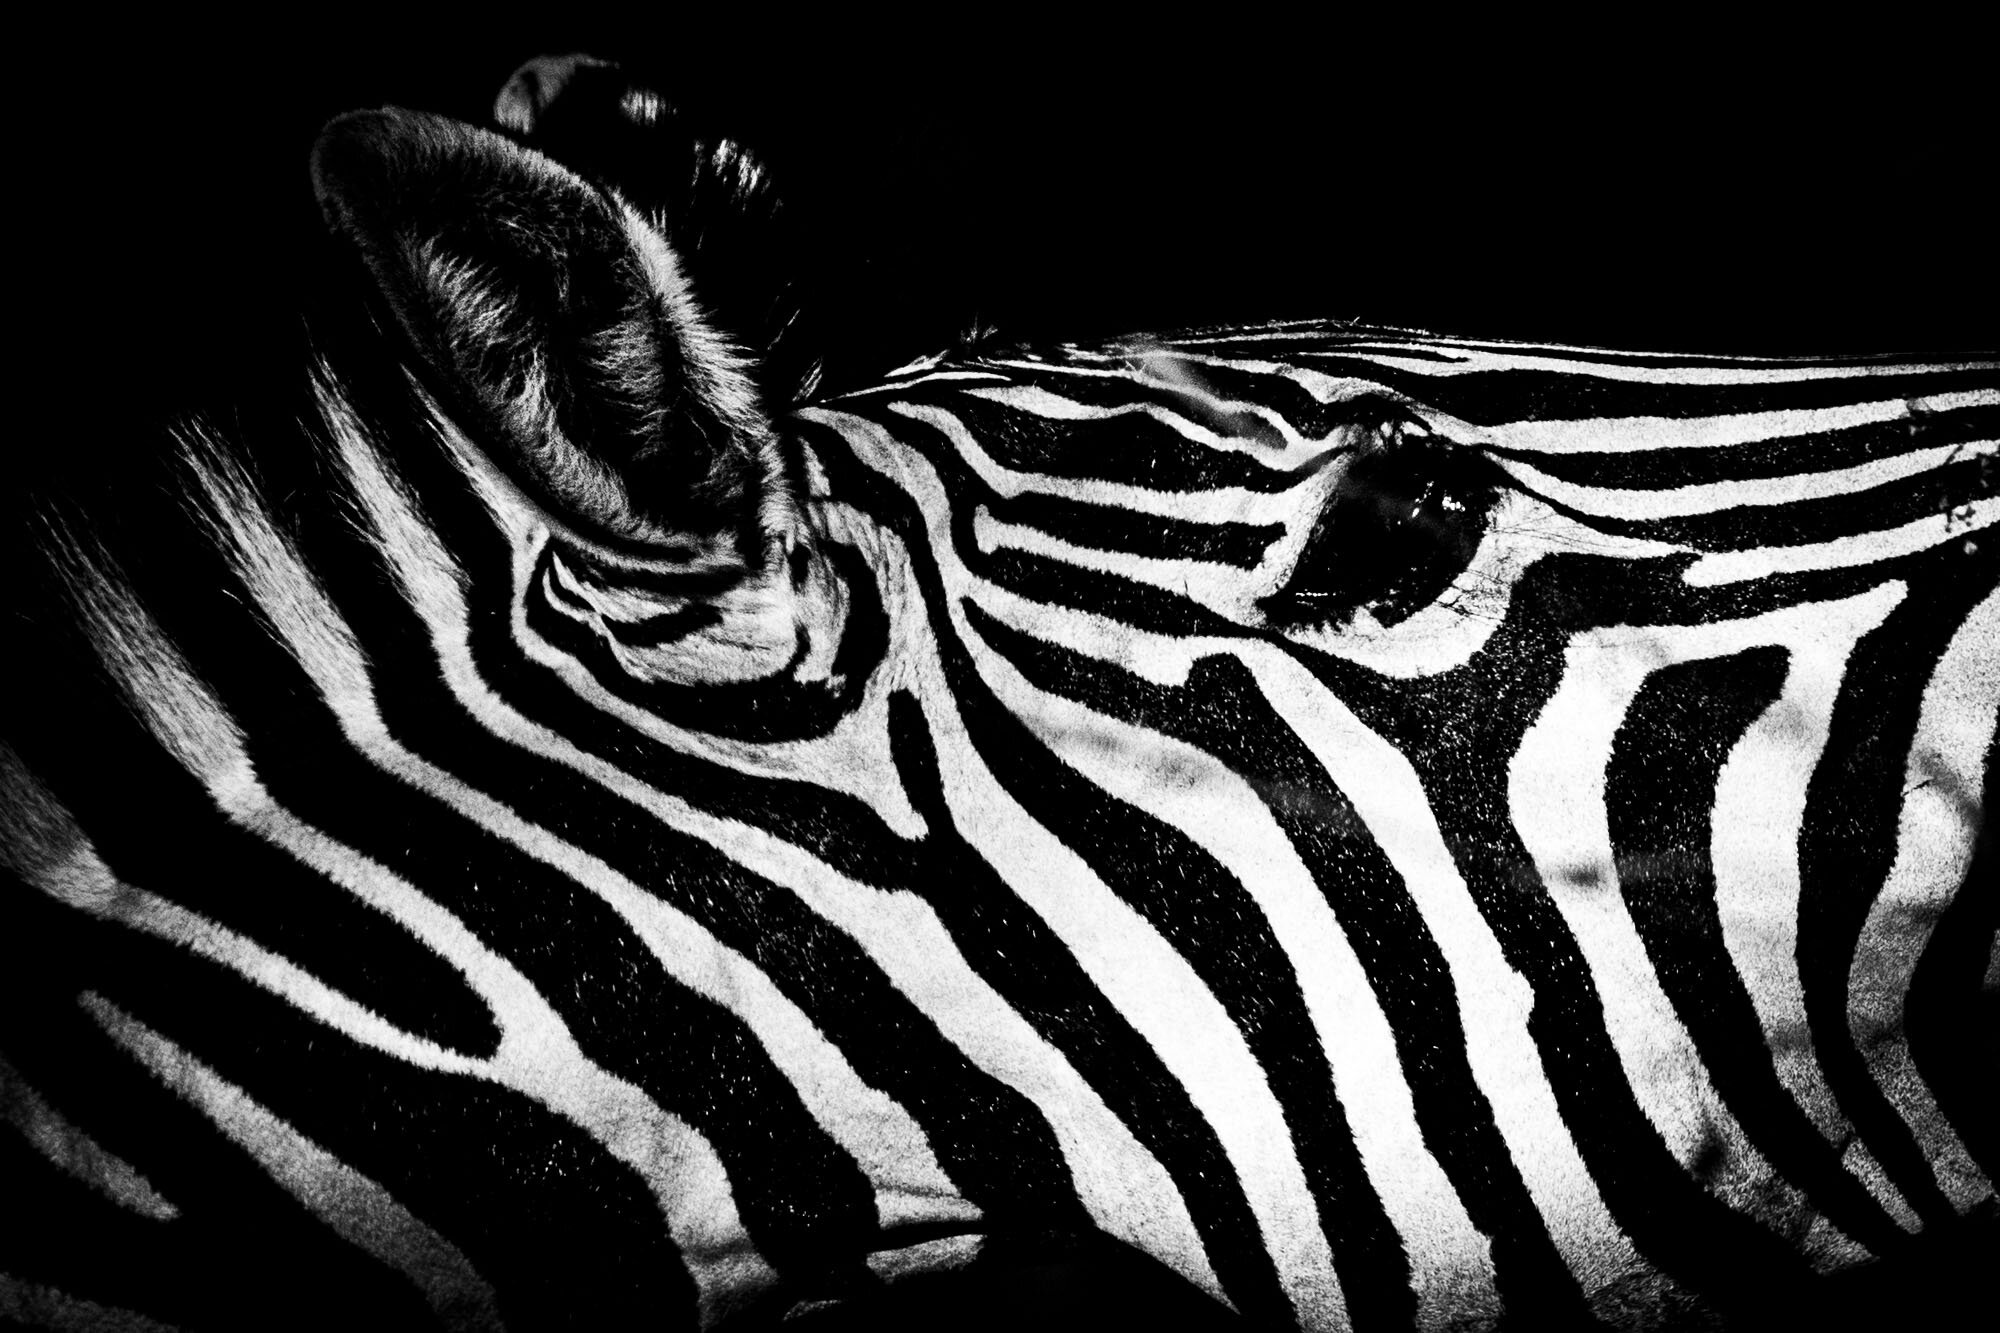 Zebra_at_Honolulu_Zoo_20191004_©HowardWolff.jpg_©_Howard_Wolff-1.jpg